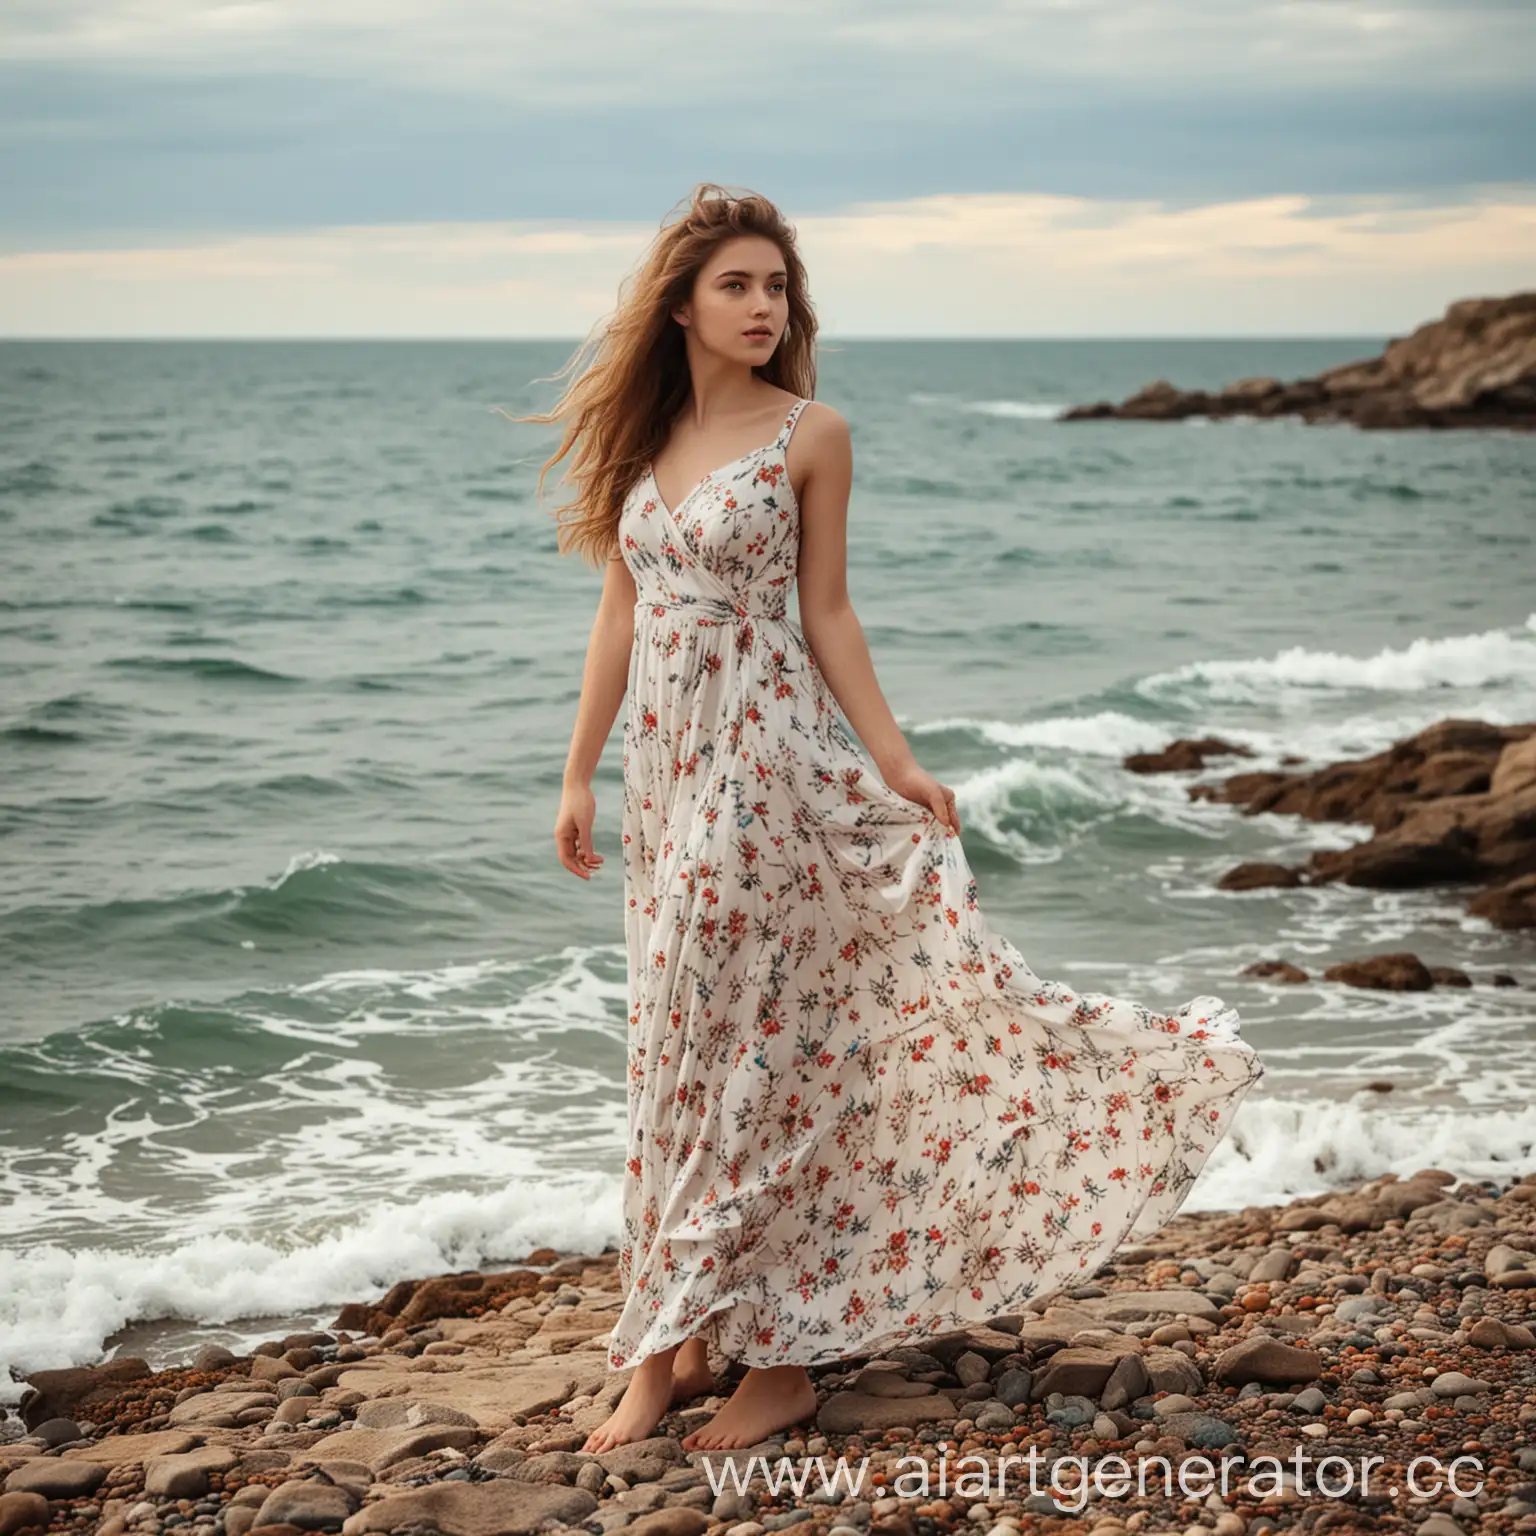 Красивая девушка в платье на фоне моря